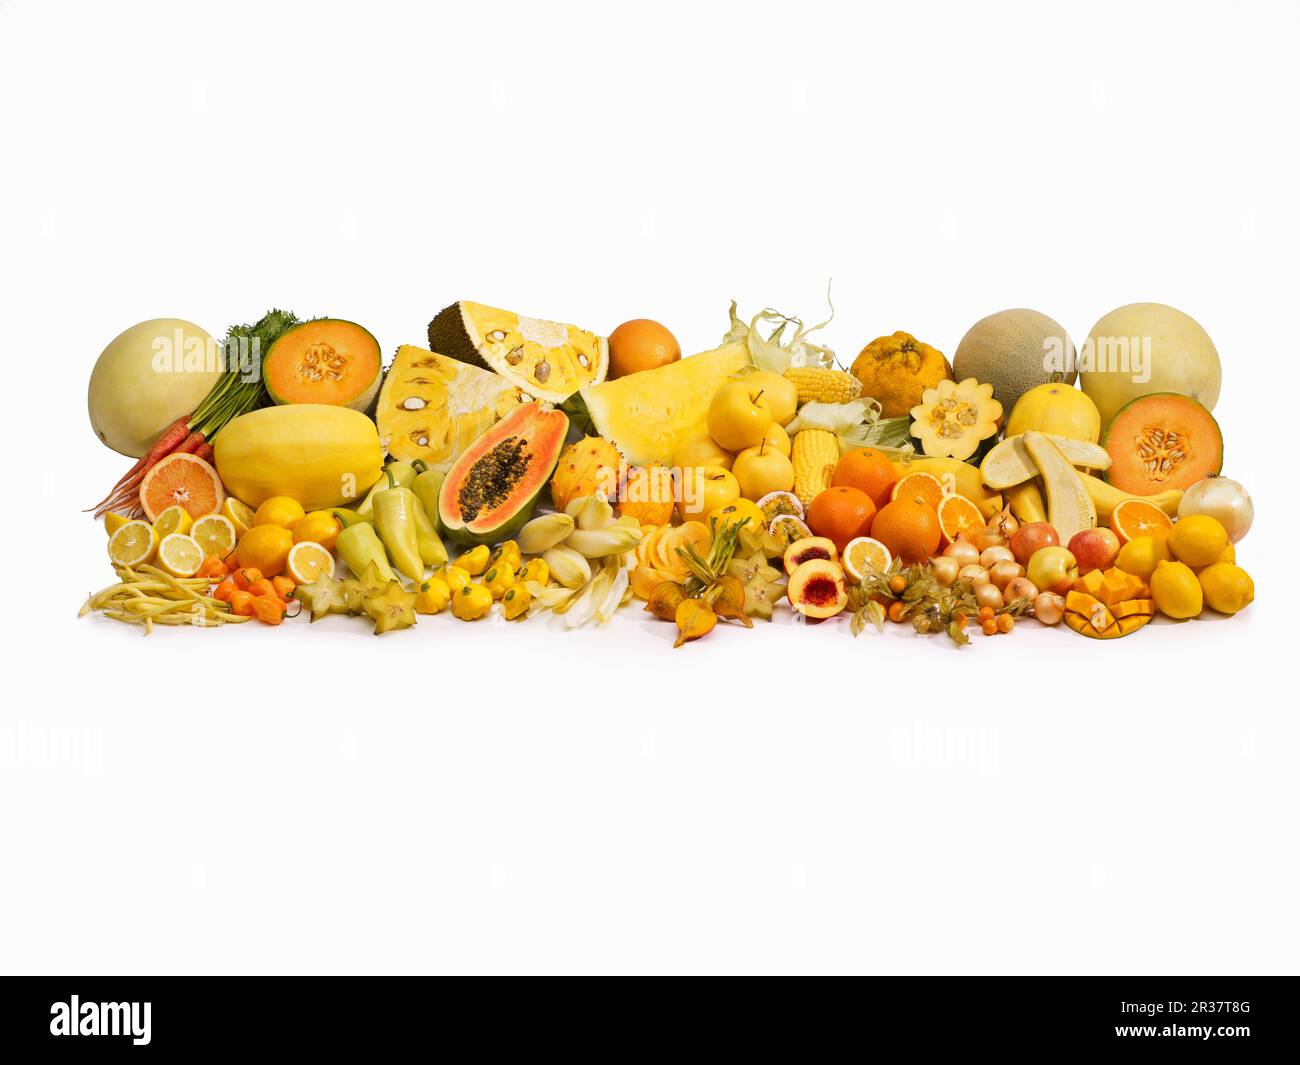 Giallo la frutta e la verdura di fronte a uno sfondo bianco Foto Stock